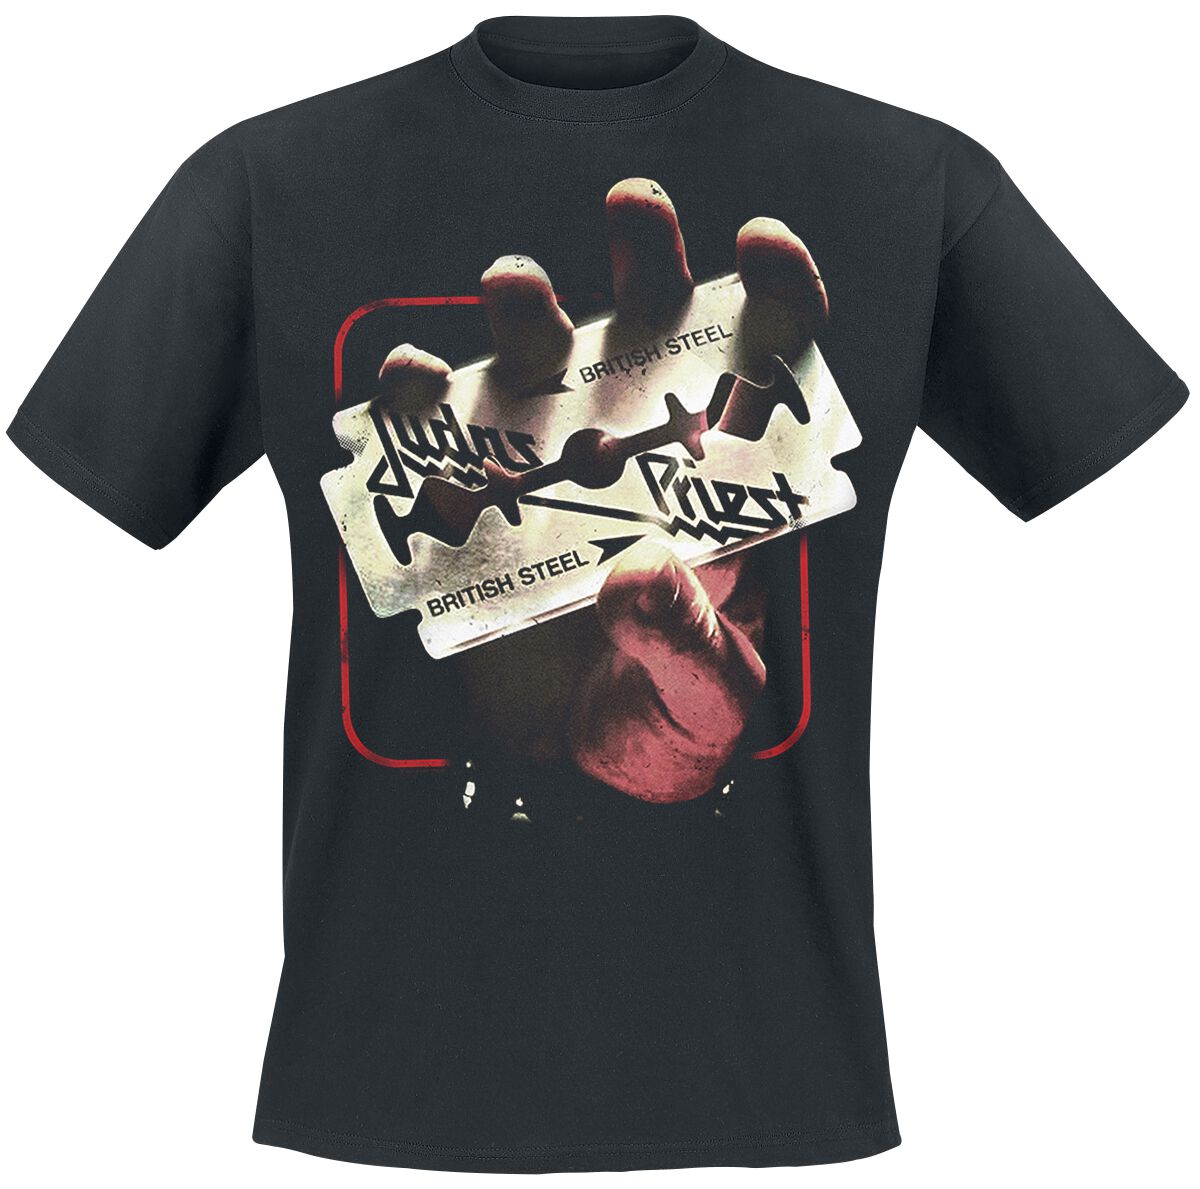 Judas Priest T-Shirt - British Steel 50HMY Tour - M bis XXL - für Männer - Größe L - schwarz  - EMP exklusives Merchandise!